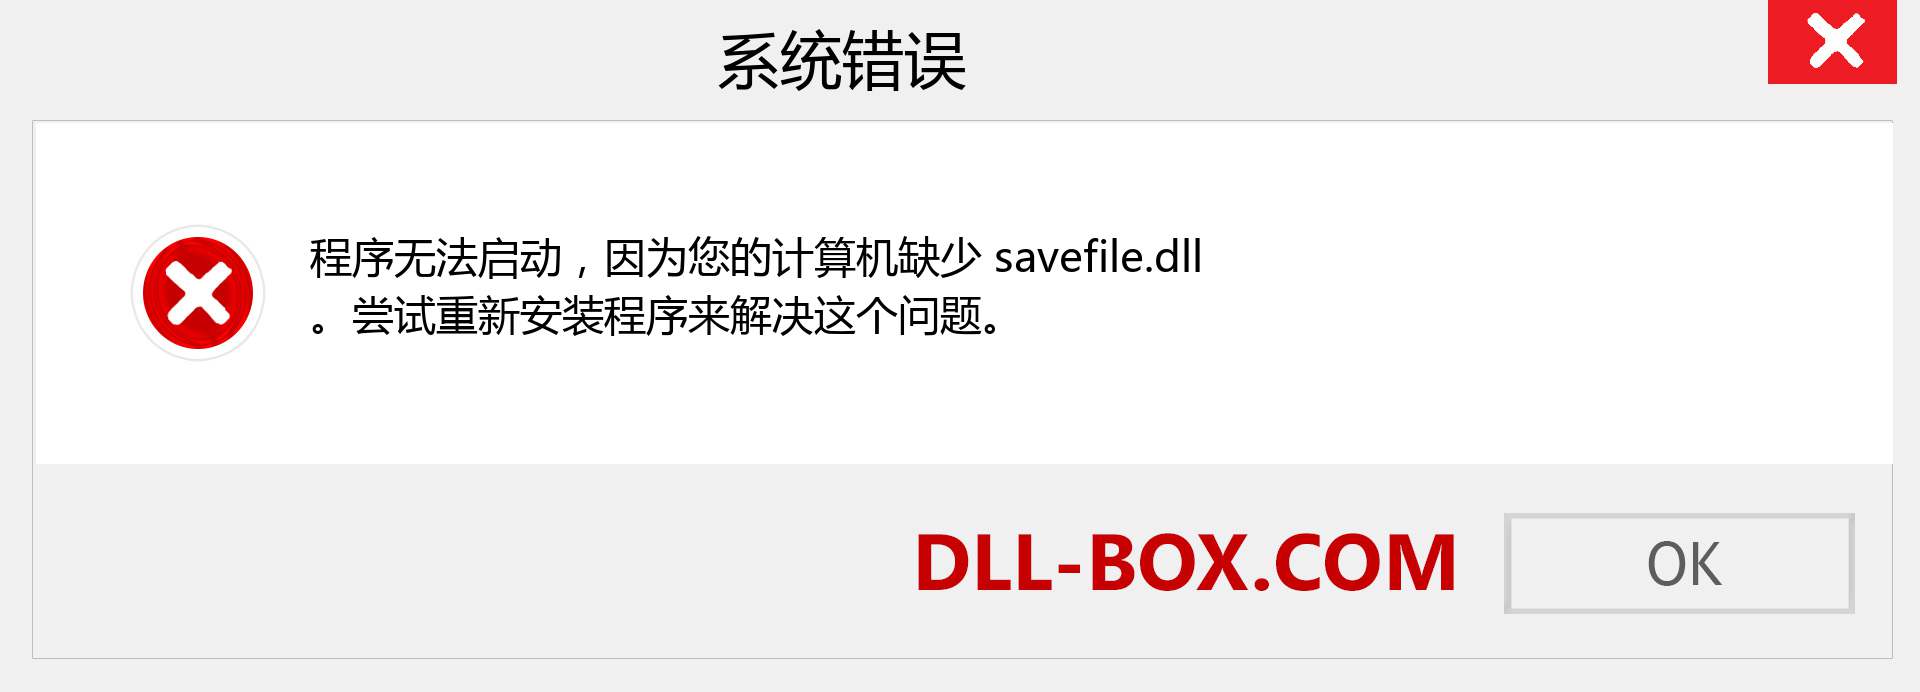 savefile.dll 文件丢失？。 适用于 Windows 7、8、10 的下载 - 修复 Windows、照片、图像上的 savefile dll 丢失错误